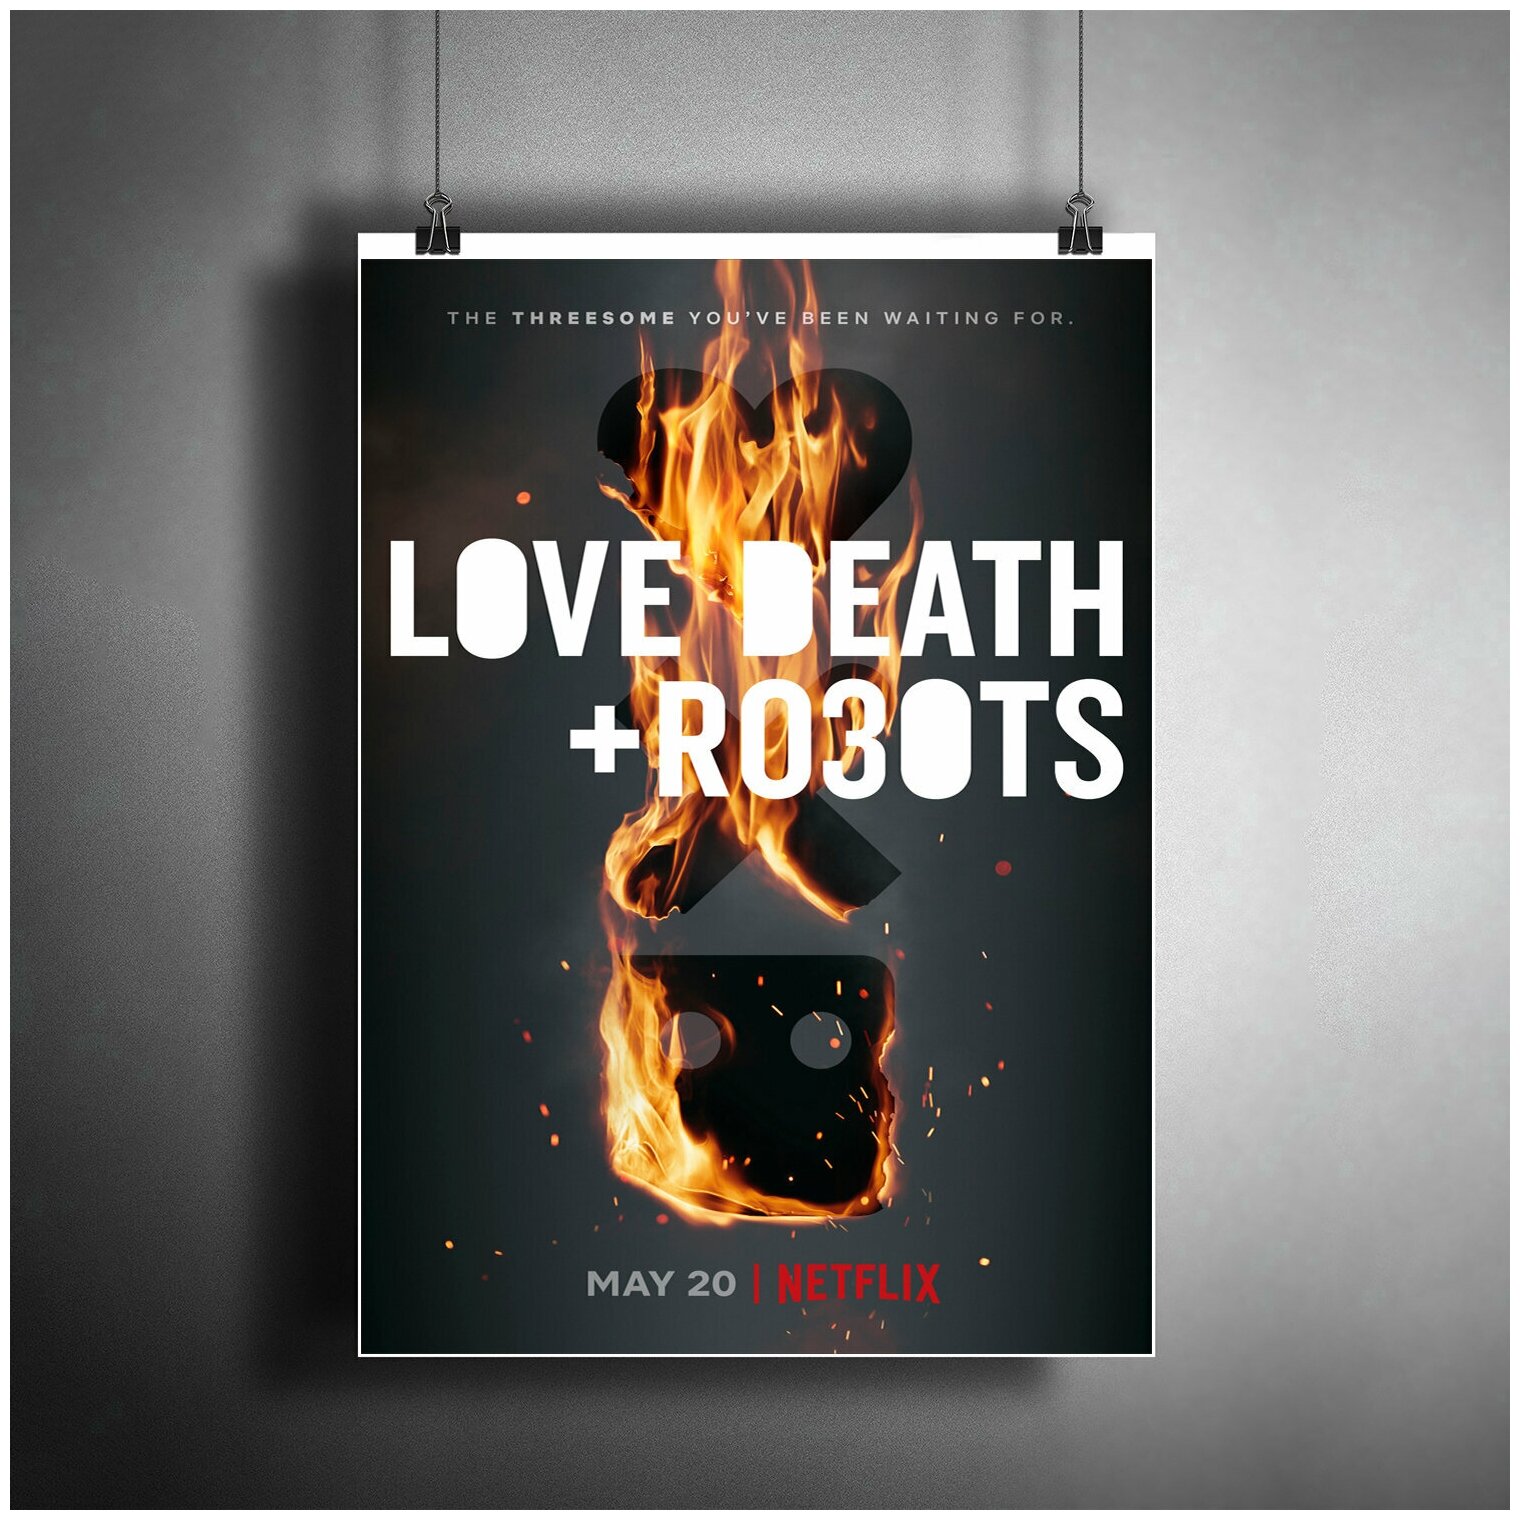 Постер плакат для интерьера "Мультсериал: Любовь. Смерть. Роботы 3. Love Death & Robots 3" / Декор дома офиса комнаты квартиры A3 (297 x 420 мм)